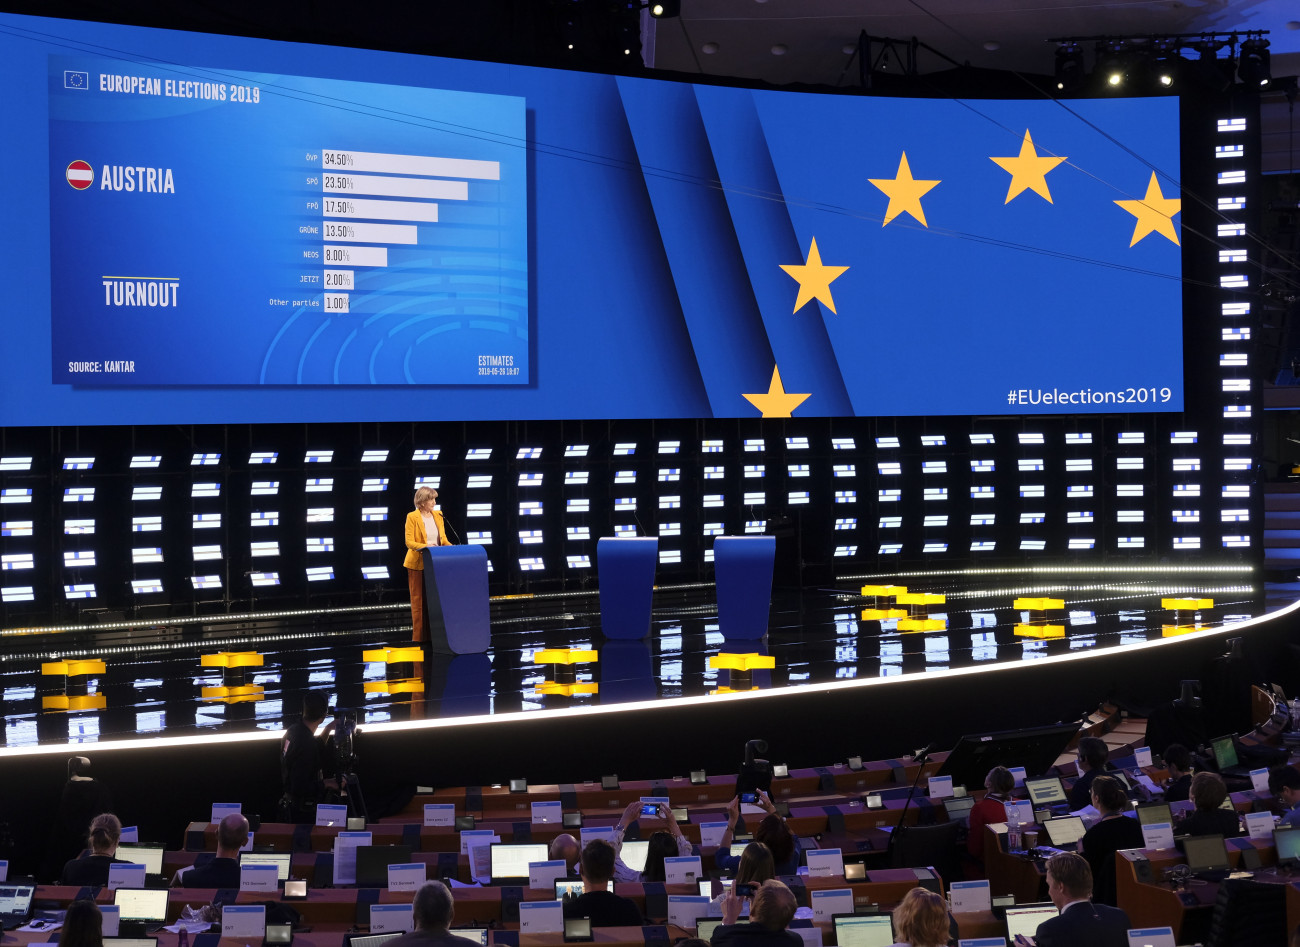 Ausztria első részeredményei a kivetítőn az Európai Parlament brüsszeli üléstermében kialakított sajtóközpontban. 
MTI/EPA/Olivier Hoslet